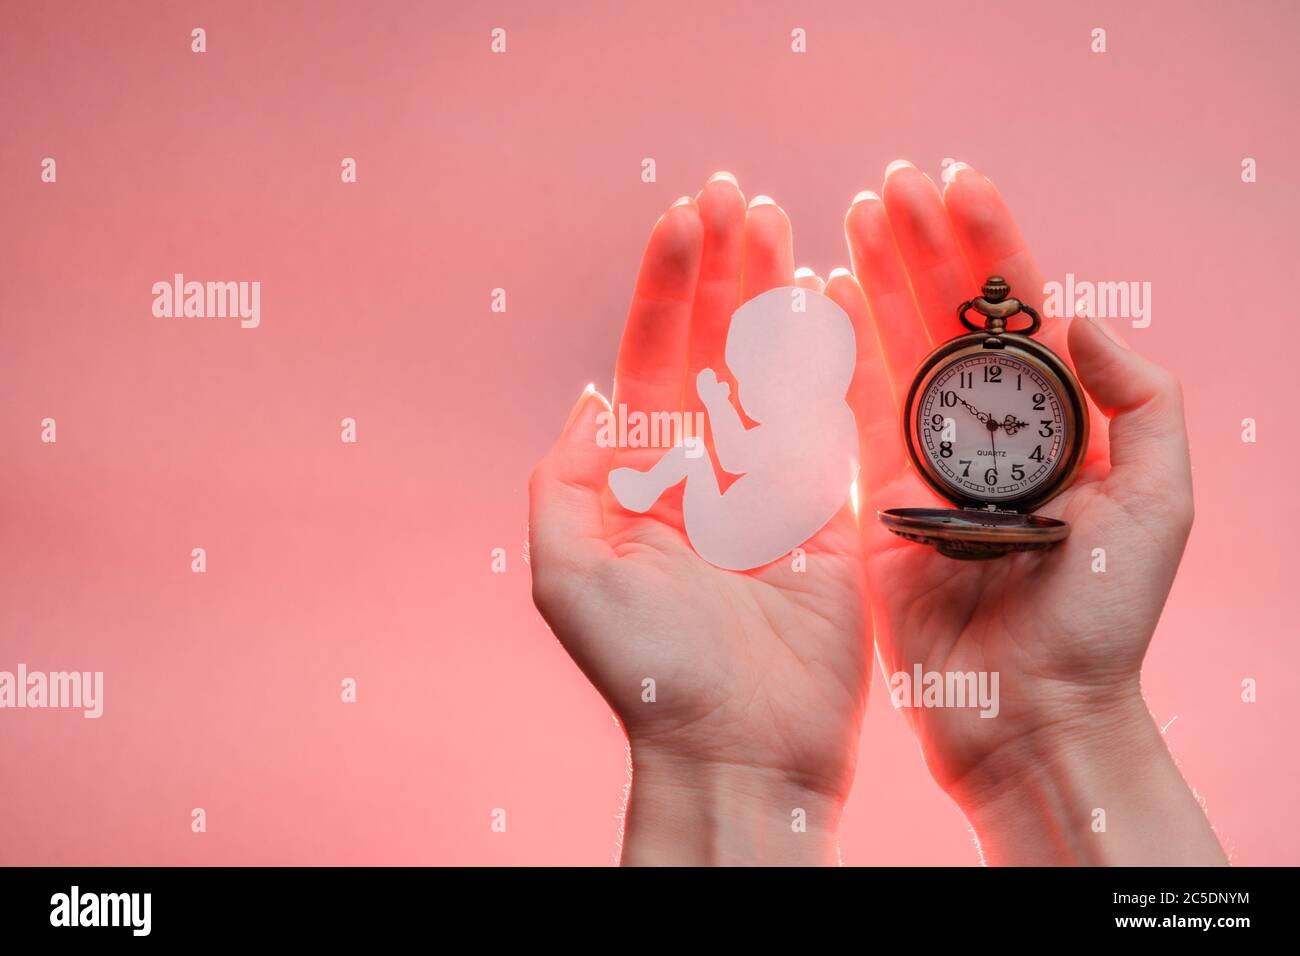 Papier silhouette d'embryon et horloge dans les mains de femme avec lumière. Arrière-plan corail clair avec espace de copie. Les mains sont sur le côté droit. Mise au point douce. Banque D'Images